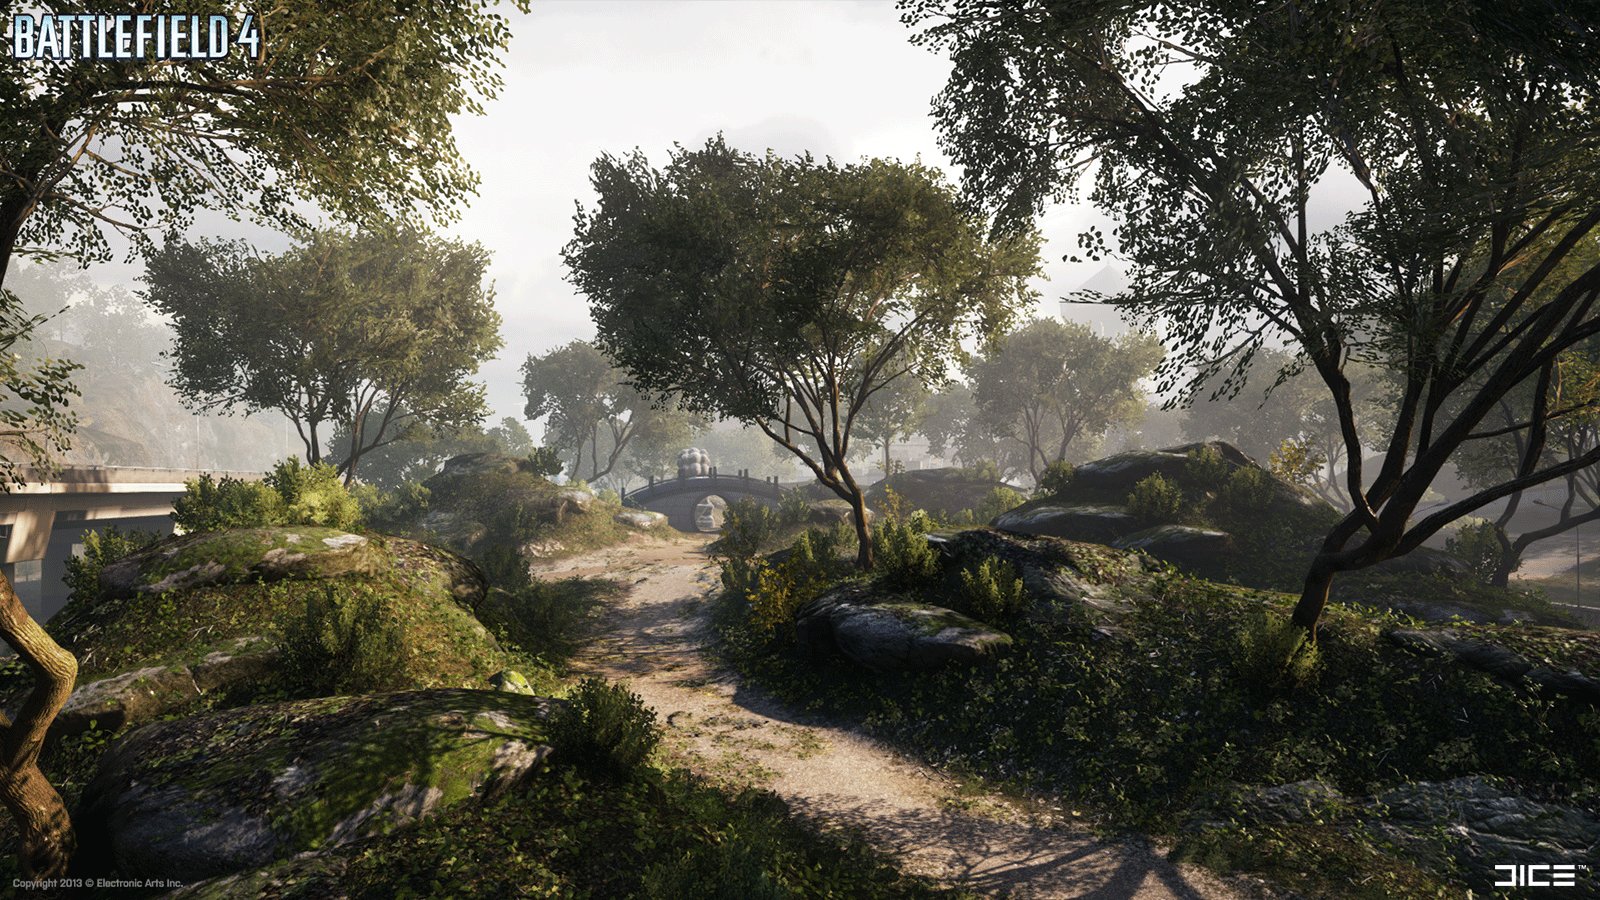 Battlefield 4 Steam Grid by julilolbbc on DeviantArt